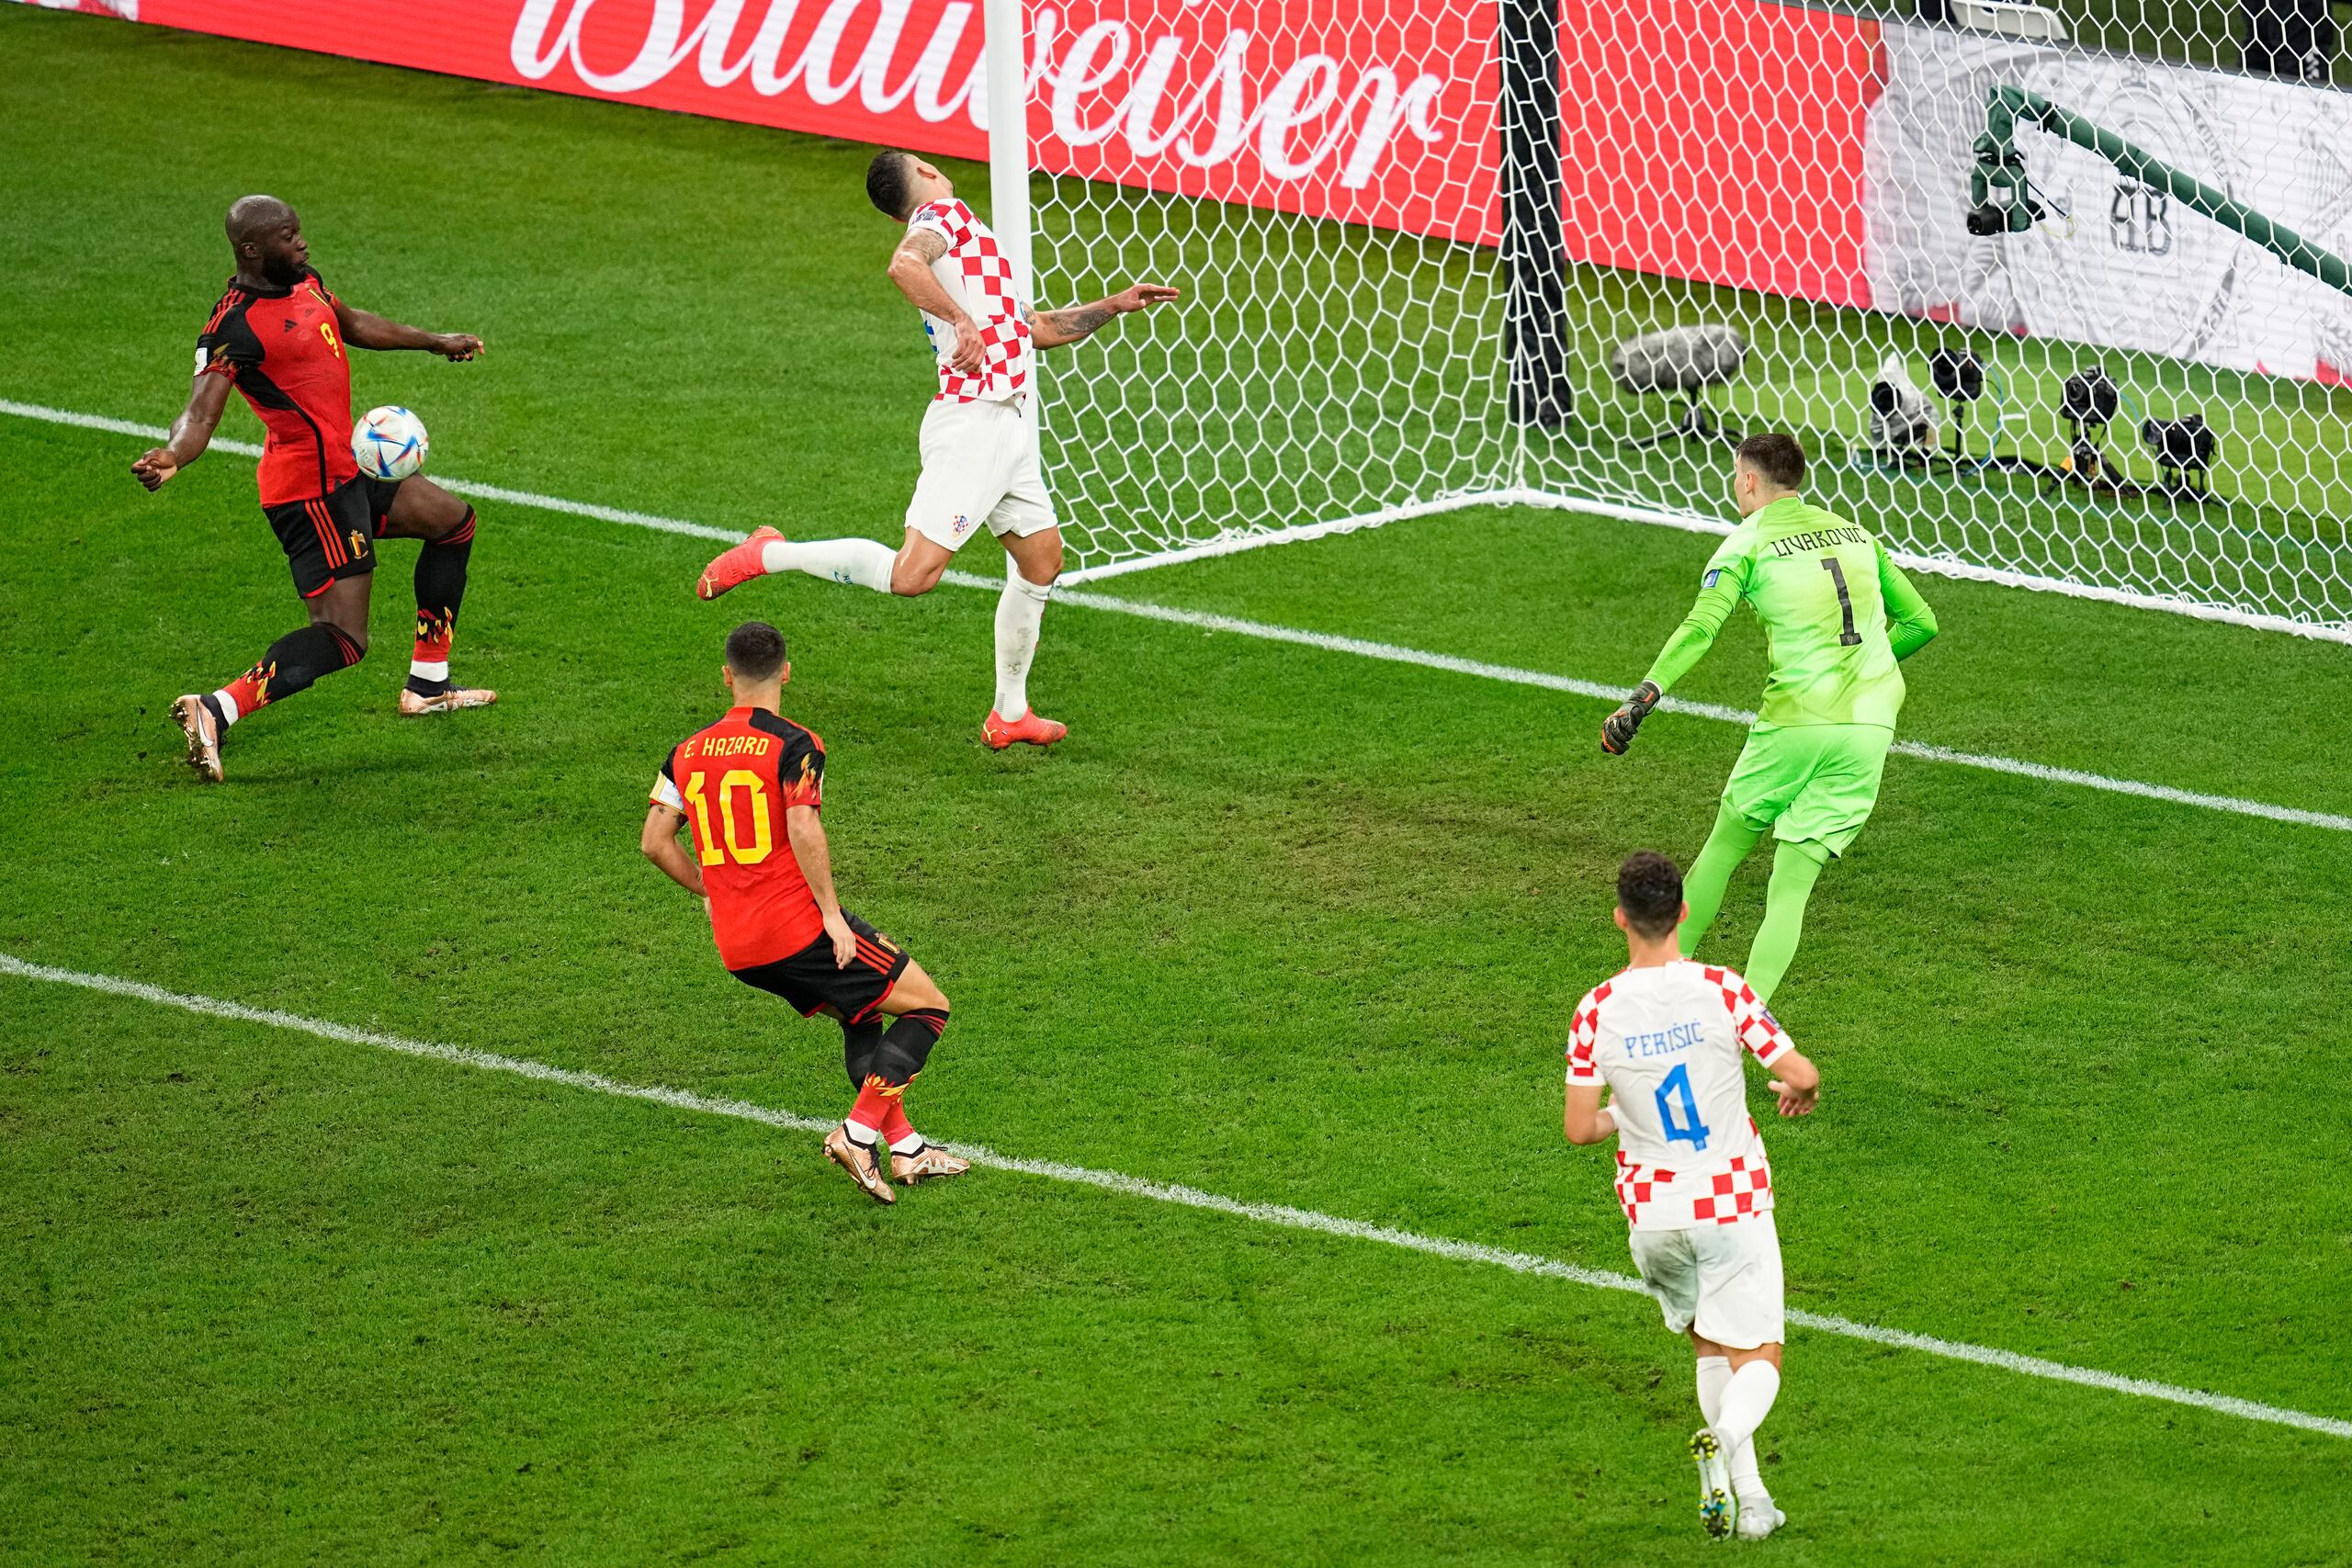 El belga Romelu Lukaku, a la izquierda con el balón, tuvo una gran oportunidad de anotar el jueves ante Croacia, pero falló y su equipo empató 0-0, lo que les dejó fuera del Mundial.